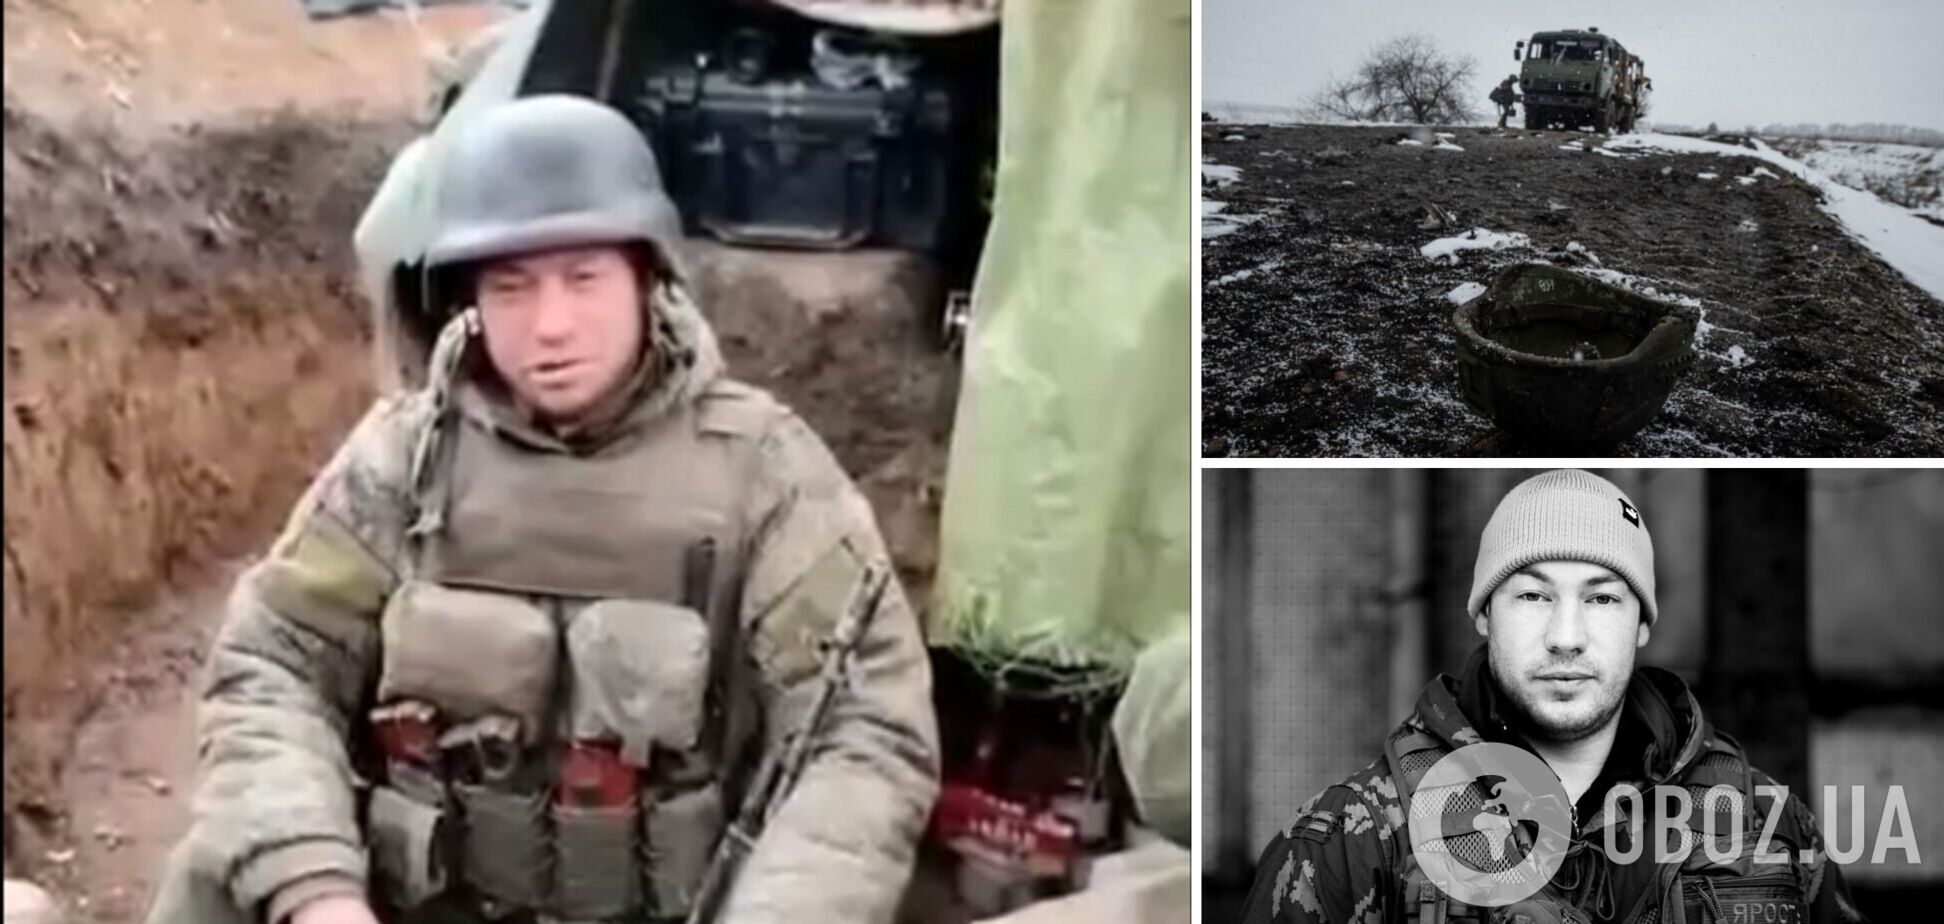 'Путин, родненький, только на вас надежда': оккупант из-под Угледара пожаловался на командиров и призвал бомбить Лондон. Видео